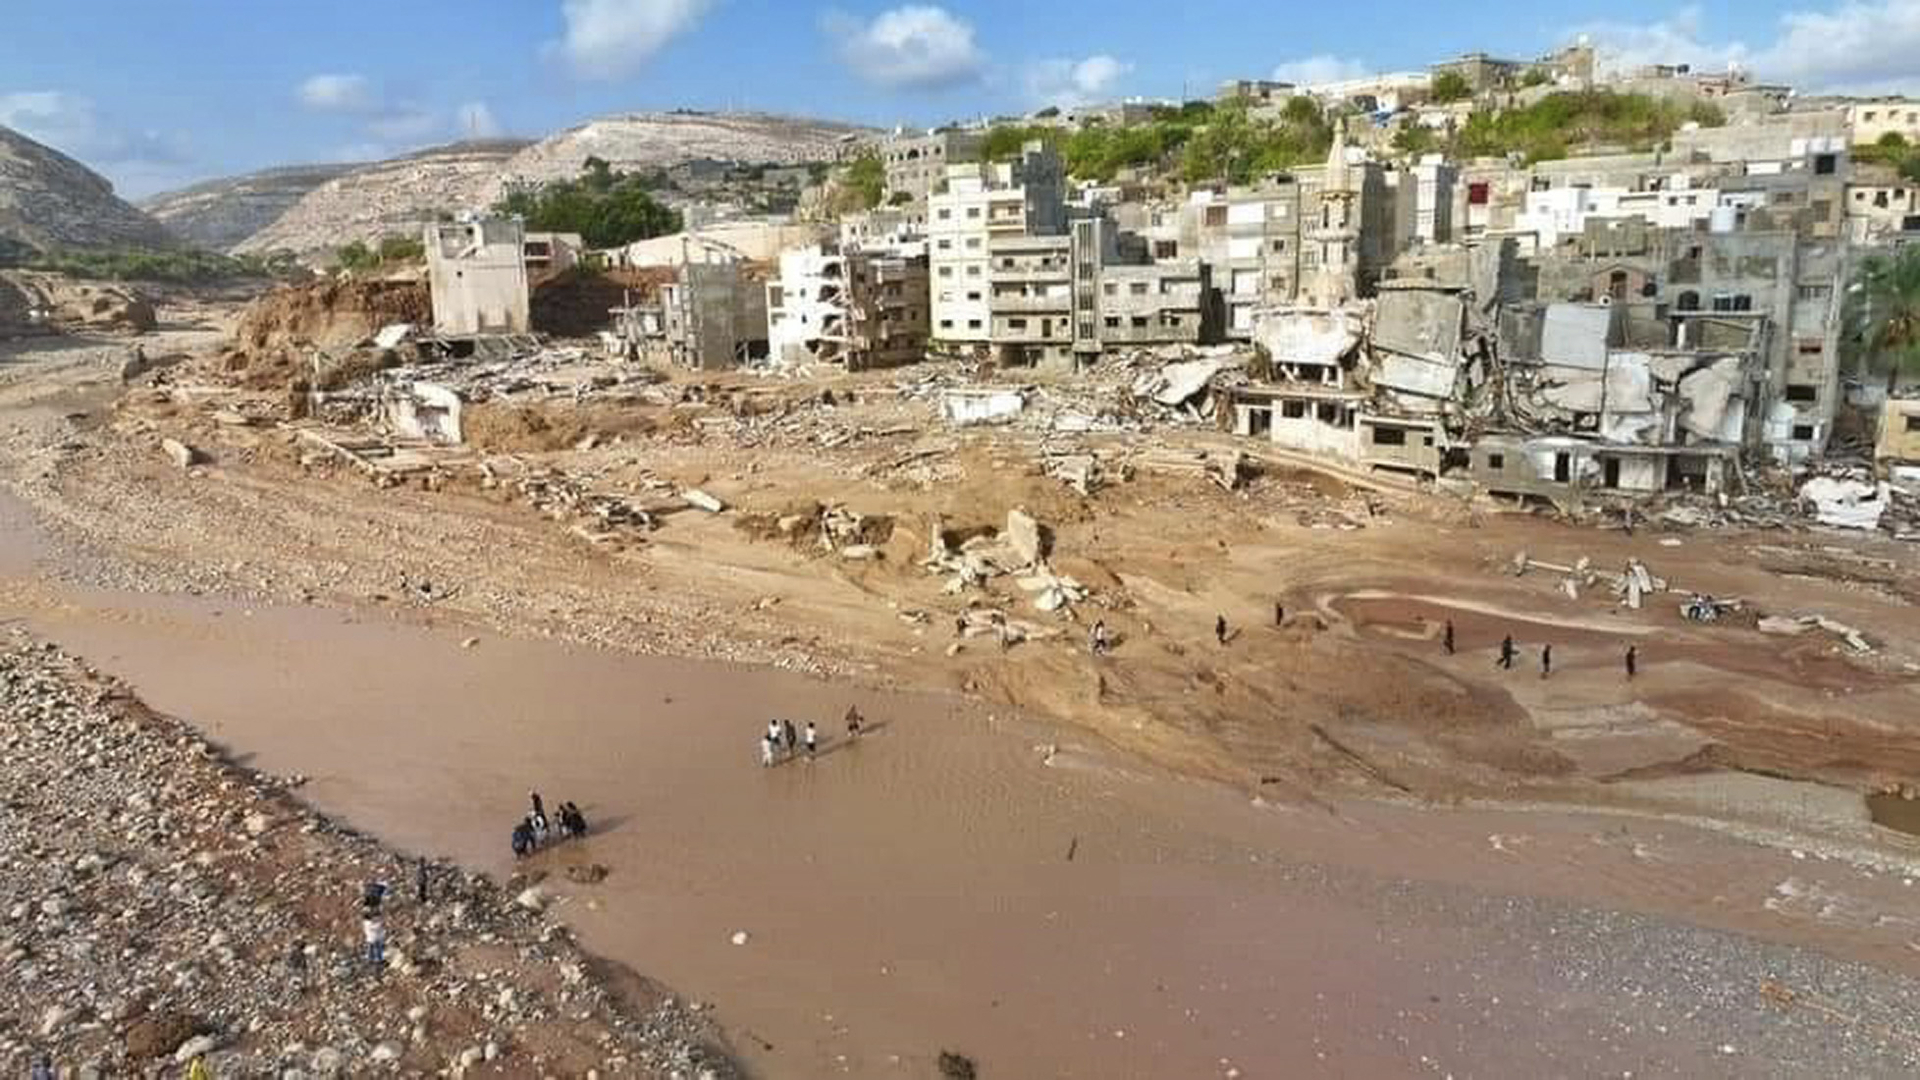 Ciclón Daniel deja 6,872 muertos y más de 10,000 desaparecidos tras su paso en Libia